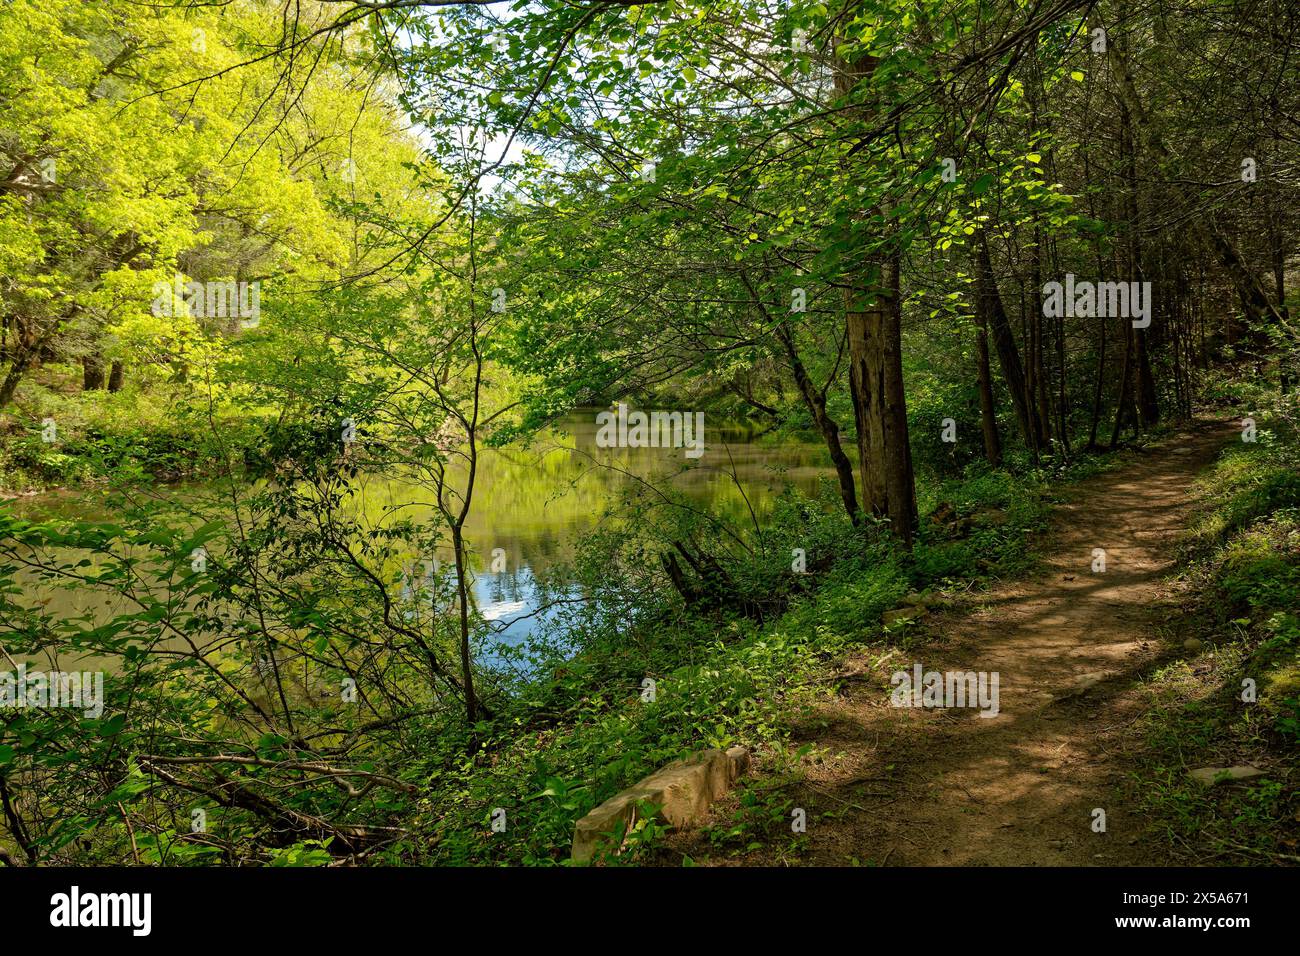 Sentiero escursionistico sterrato lungo il lento torrente con vegetazione lussureggiante nella foresta in una giornata di sole in primavera Foto Stock